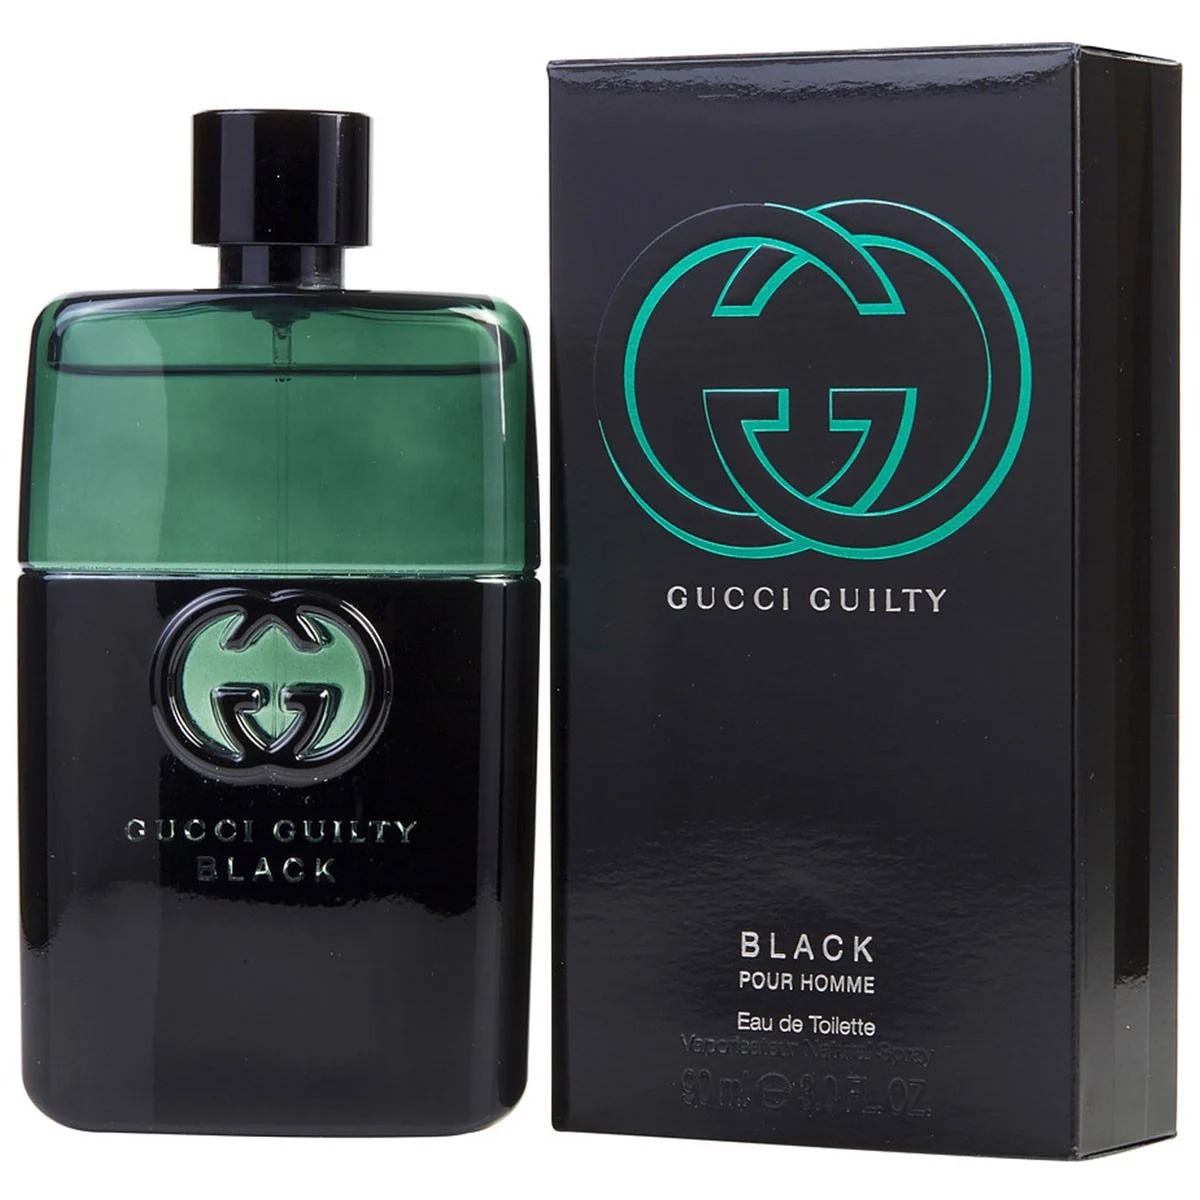 Gucci Guilty Black Pour Homme 1